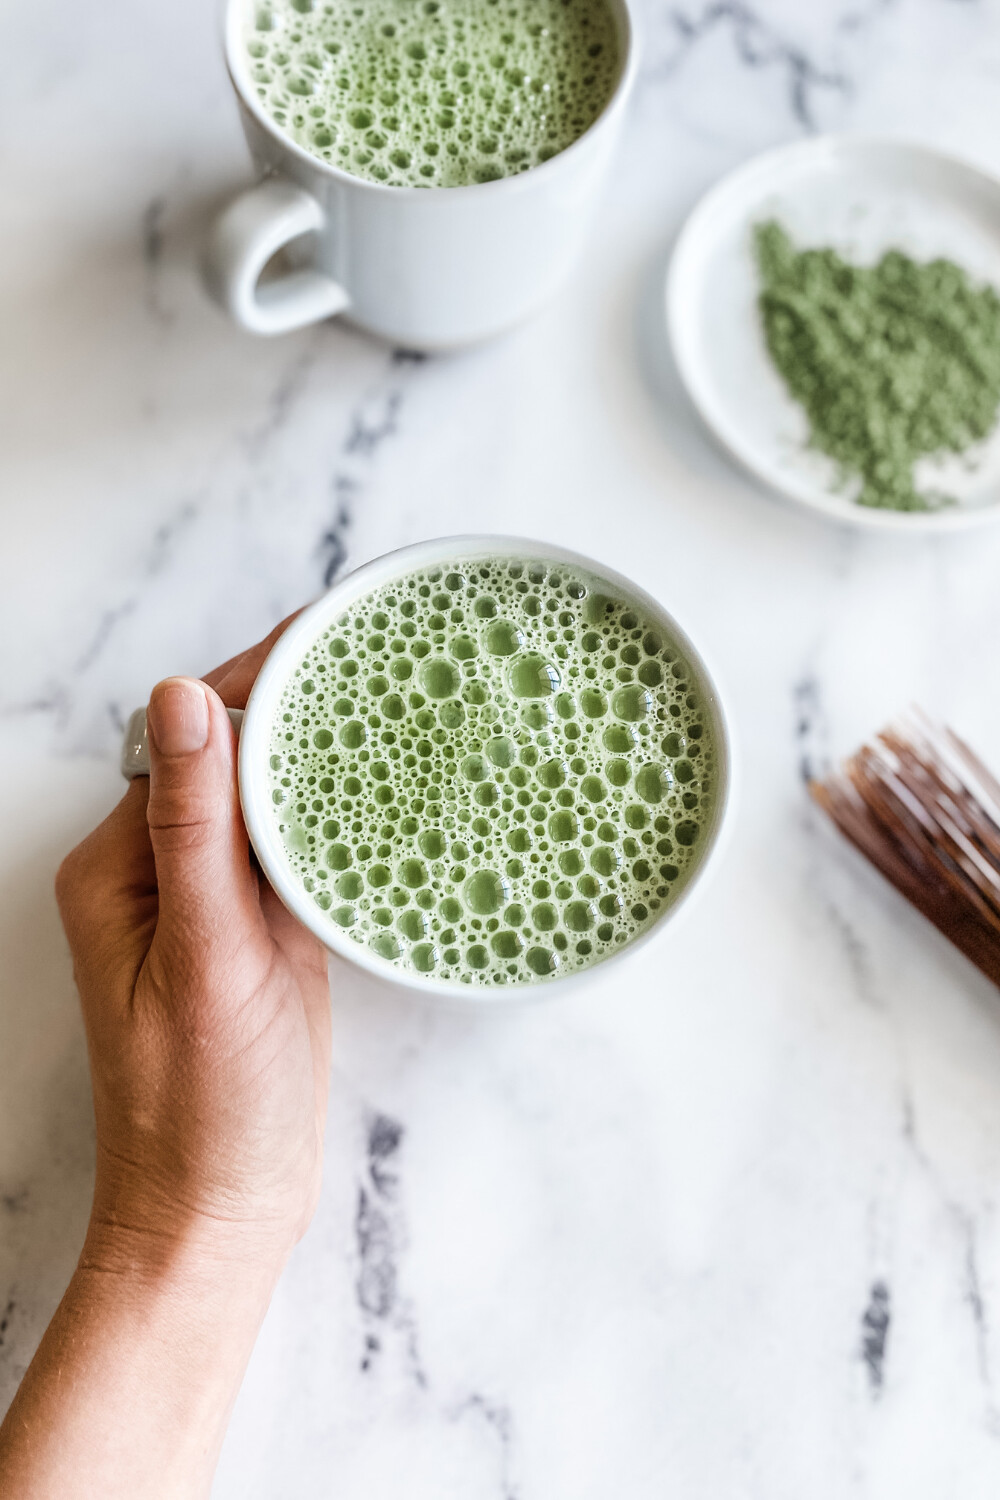 How To Make A Matcha Green Tea Latte